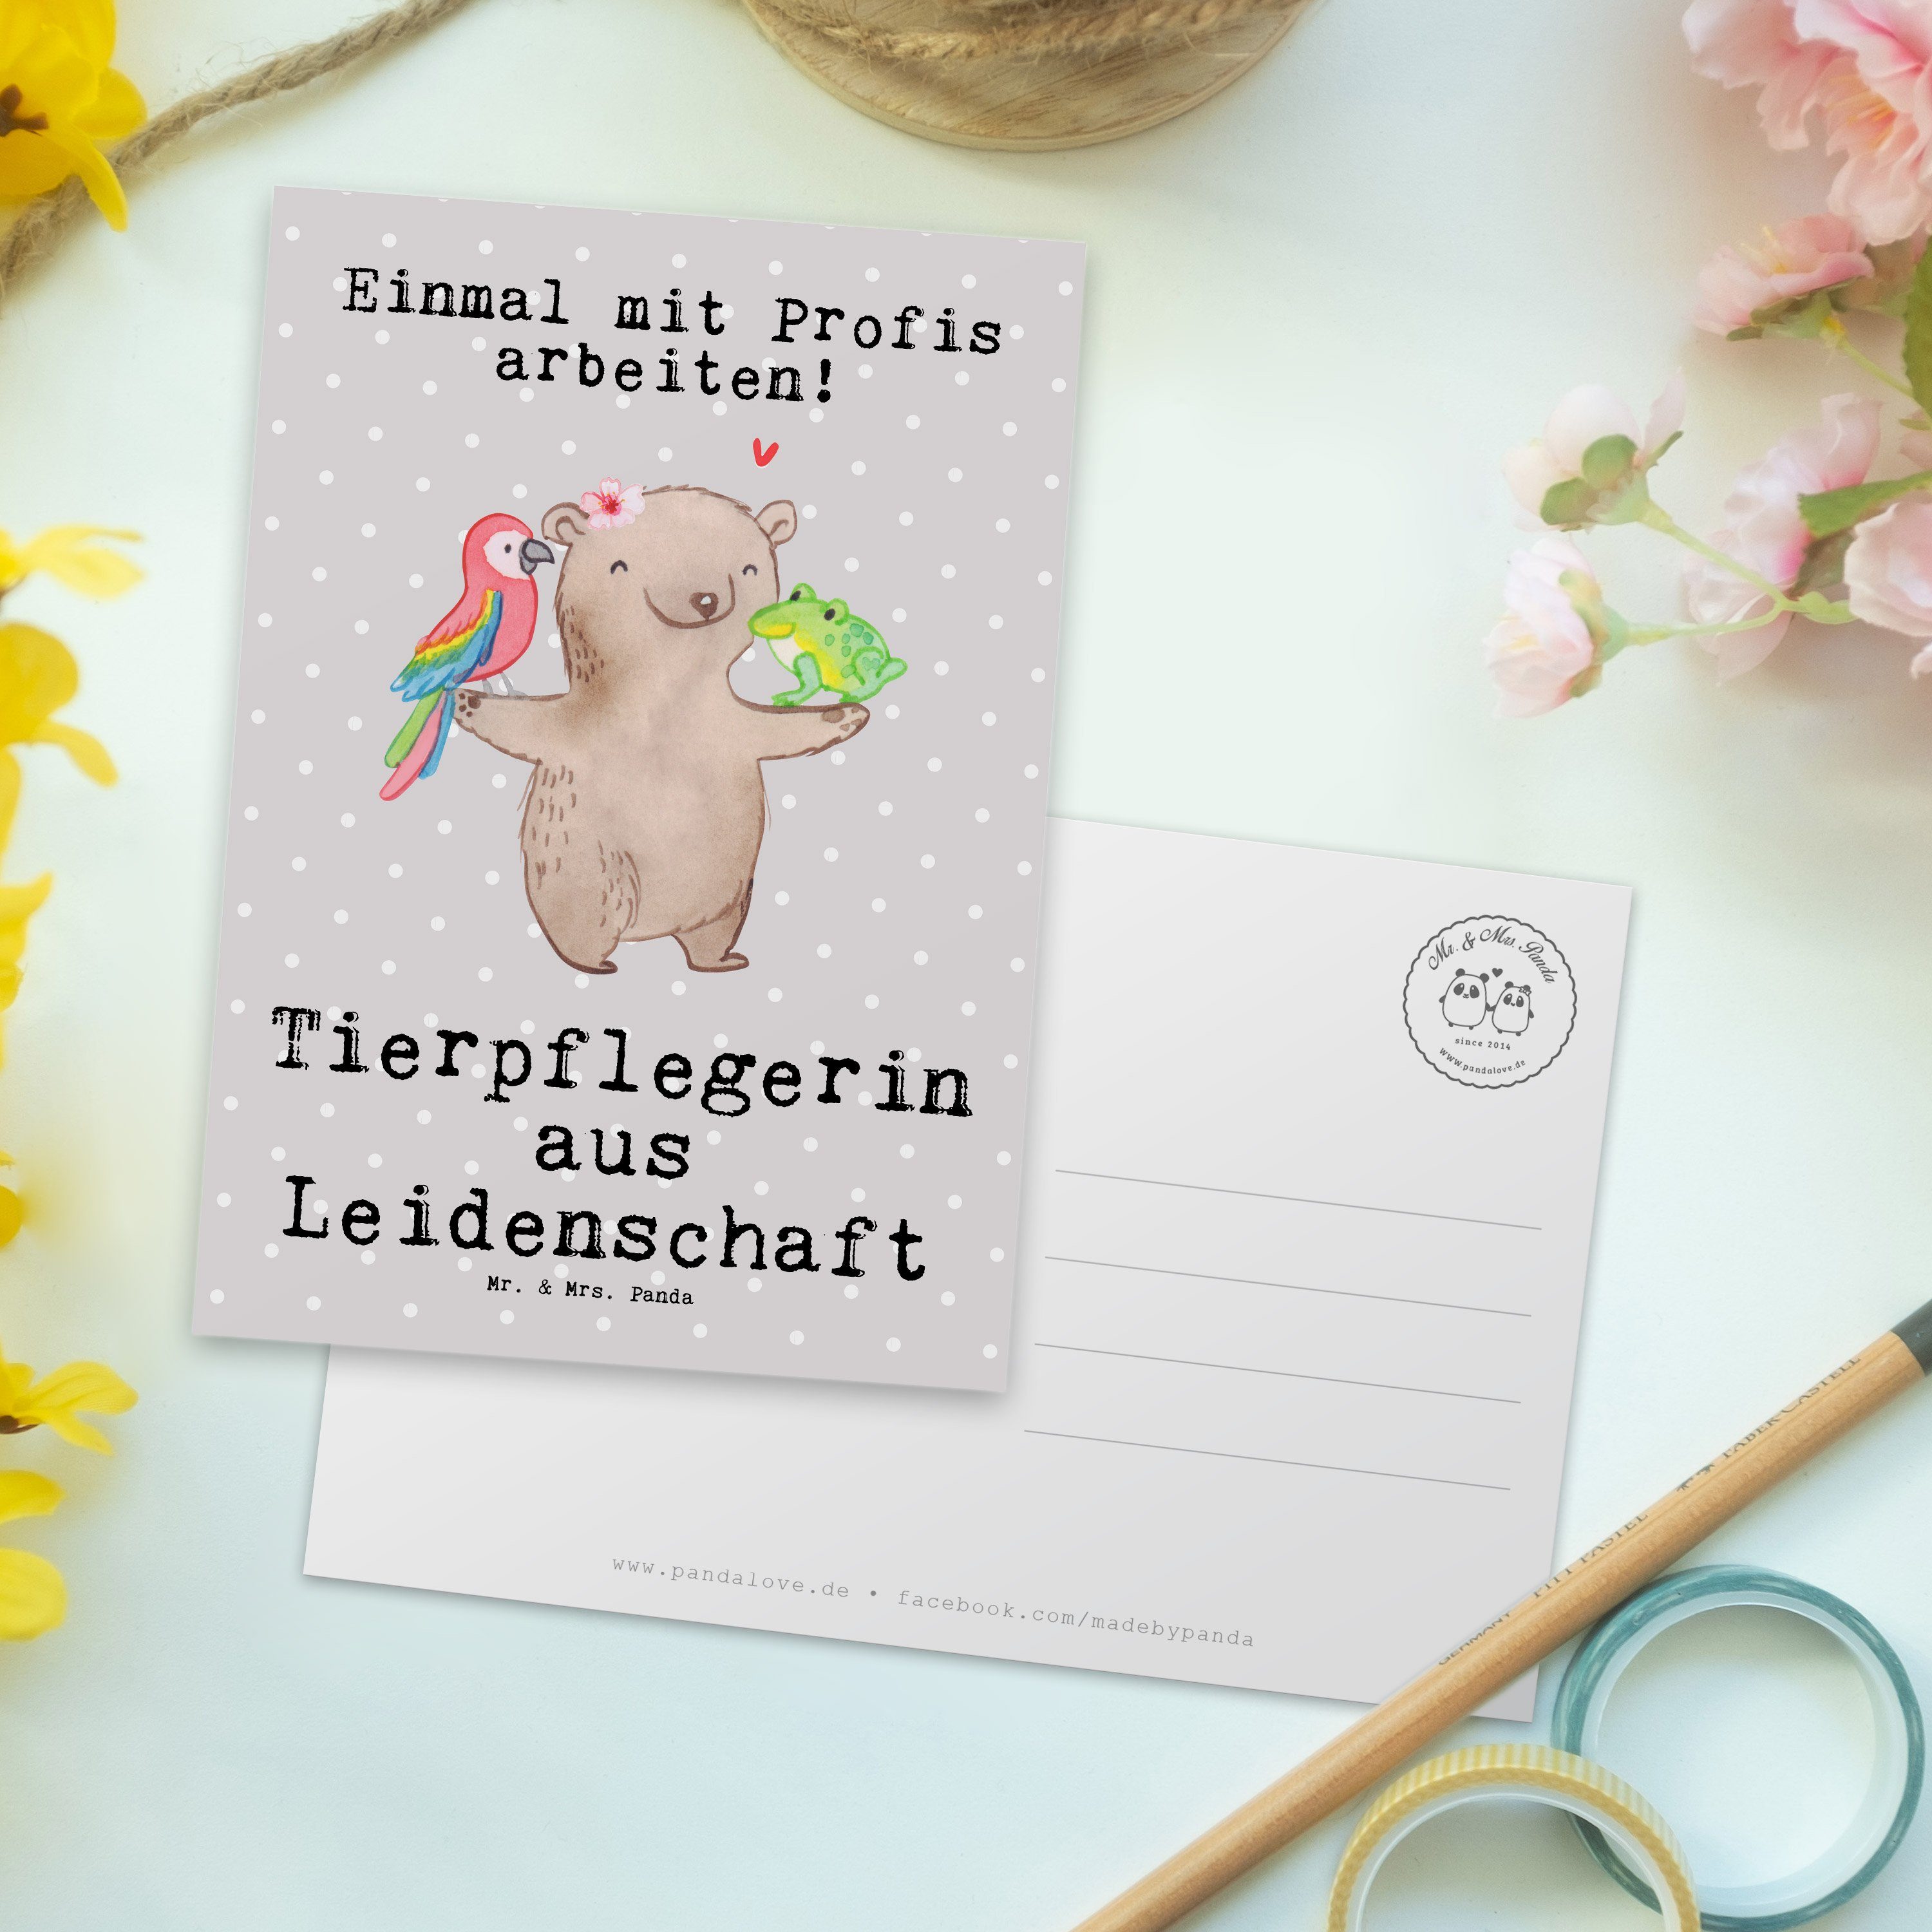 Mrs. Grußkarte Geschenk, Grau Postkarte - Panda Pastell - aus & Leidenschaft Mr. Tierpflegerin